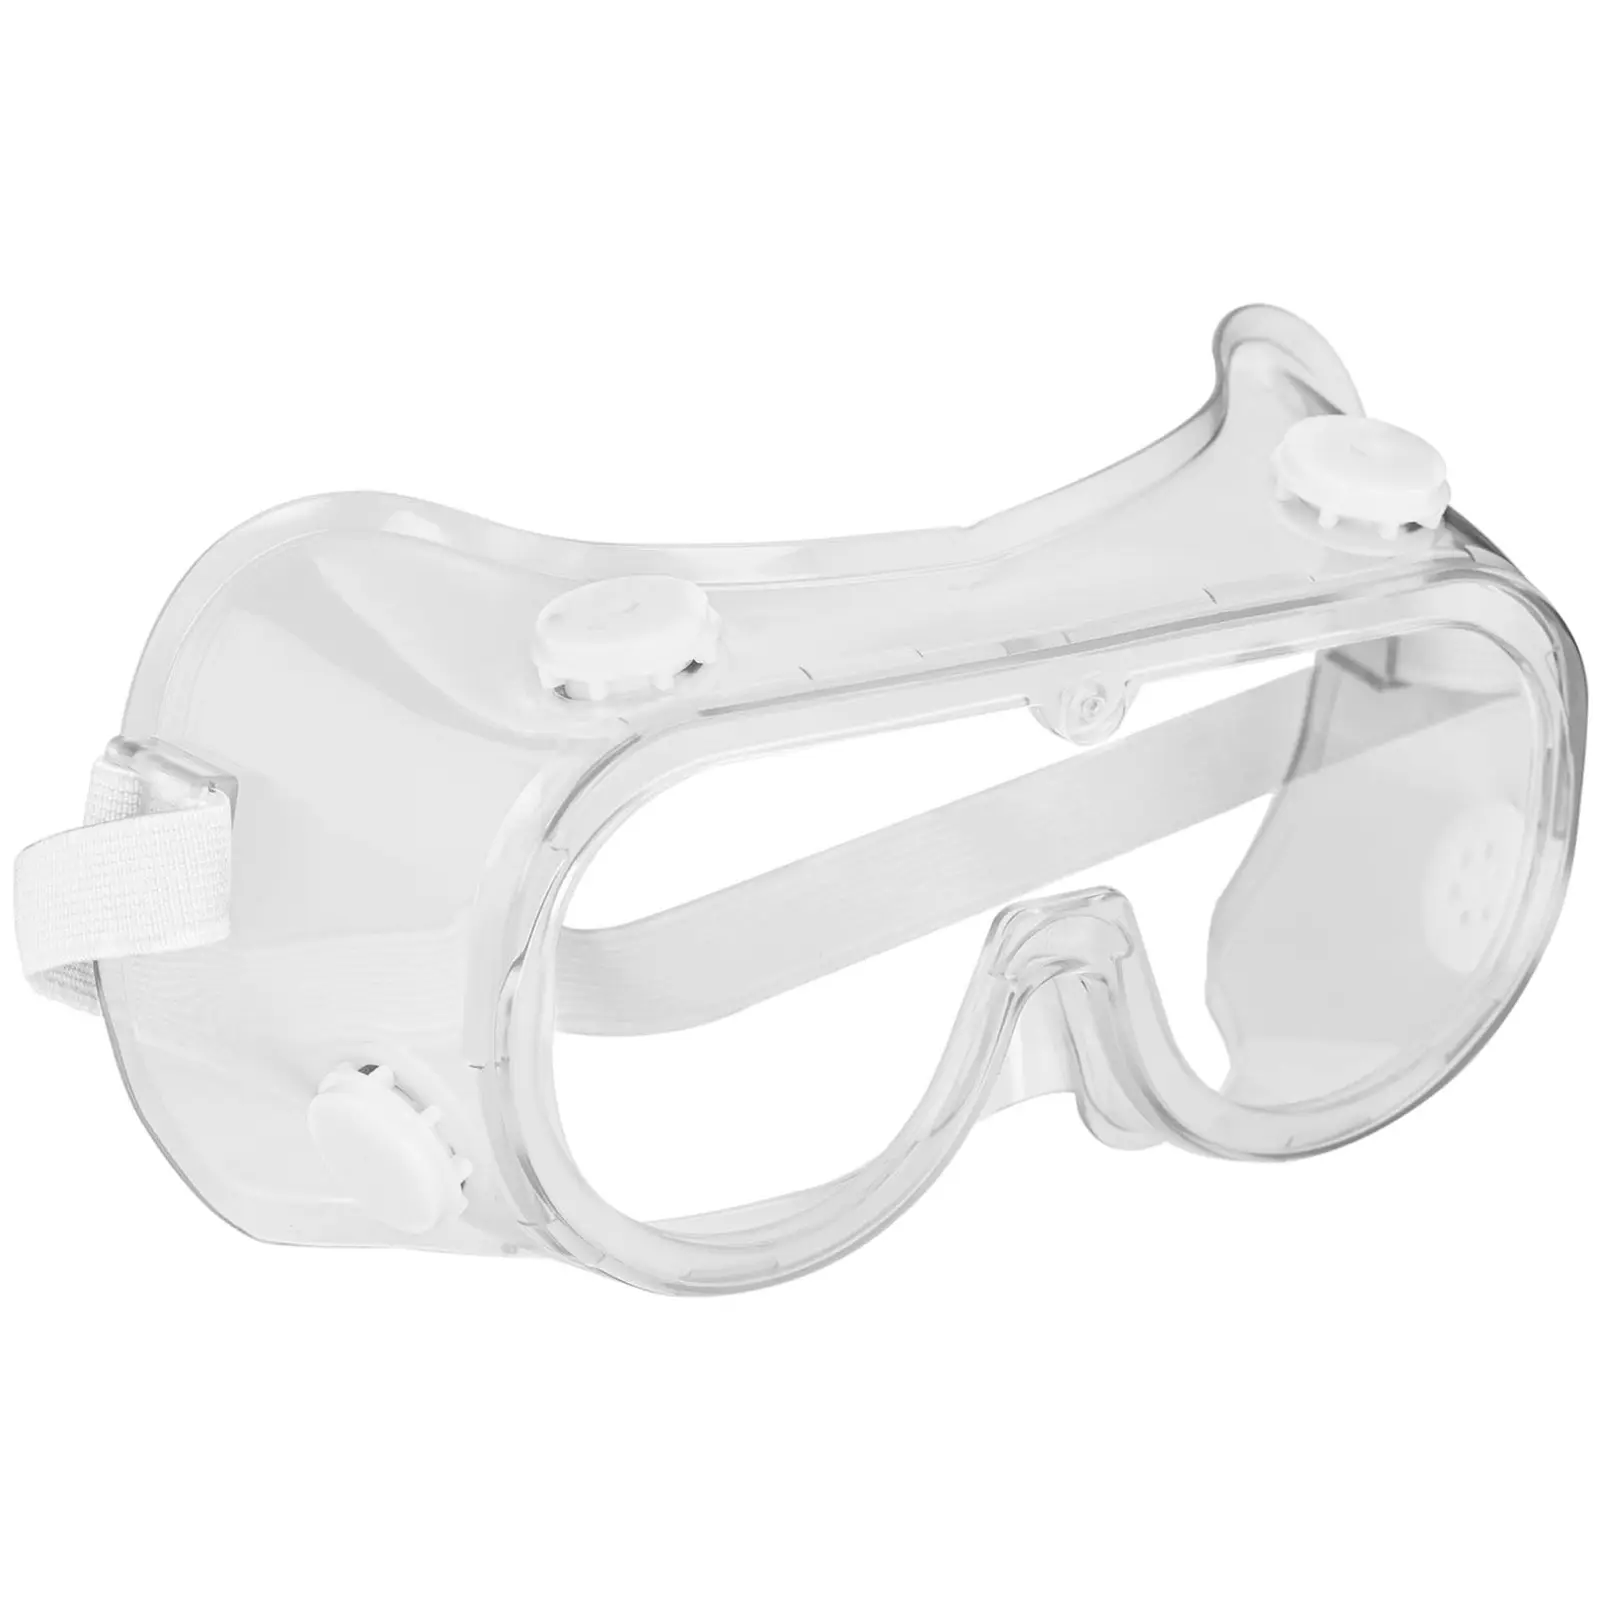 Védőszemüveg - 3 darabos készlet - átlátszó - egy méret